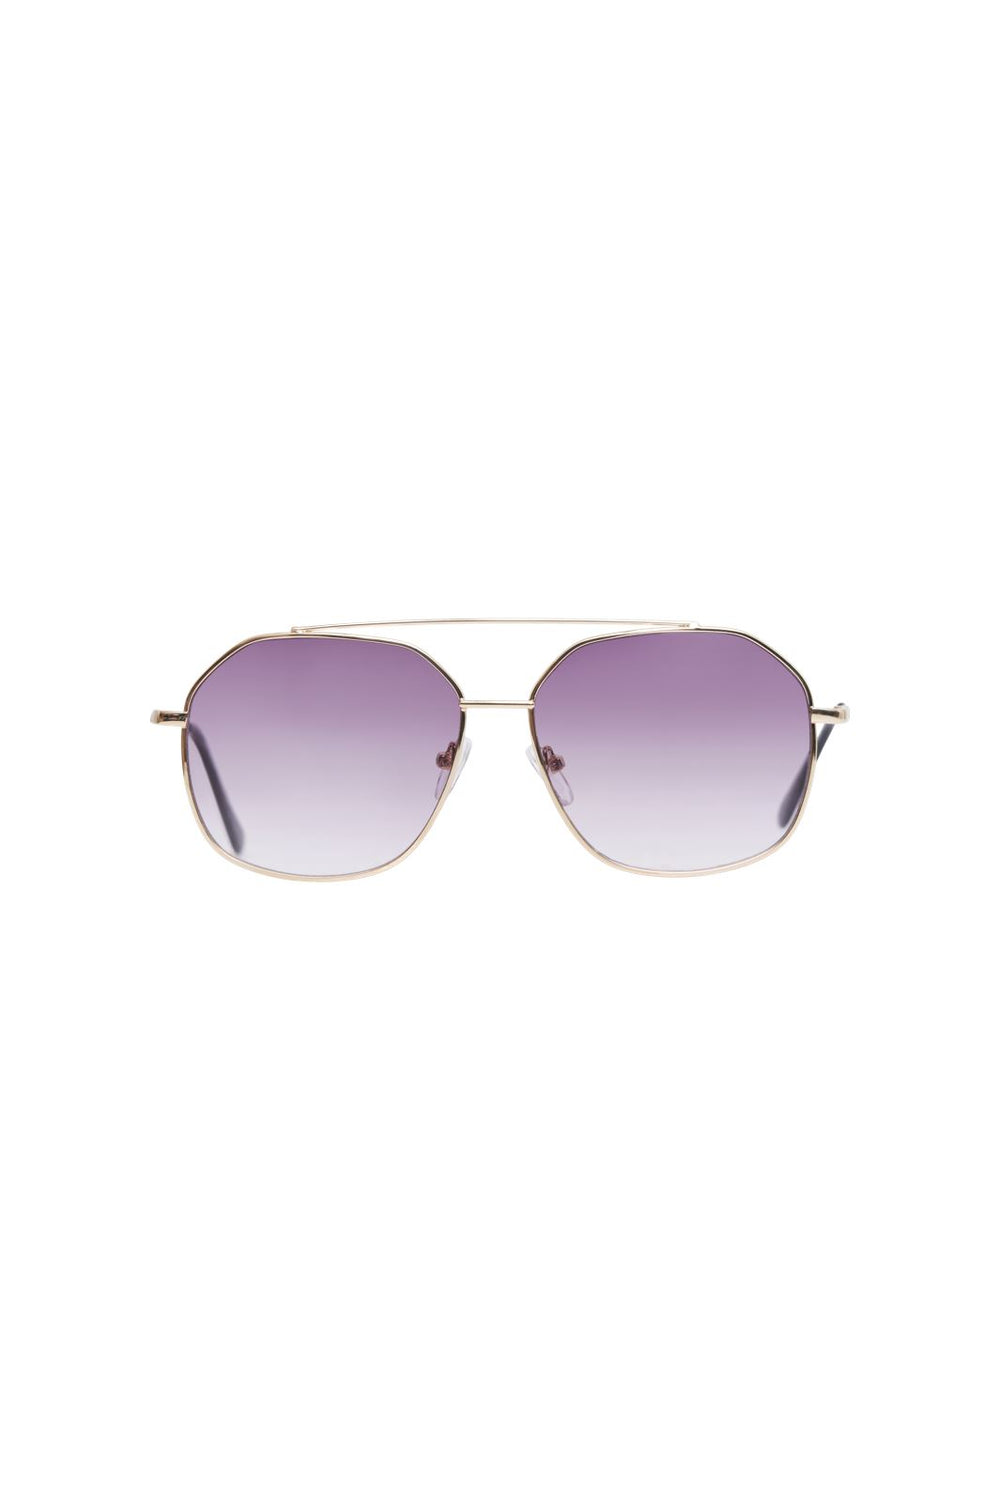 Pieces - Pcandie M Sunglasses - 4399346 Gold Colour Purple Lens